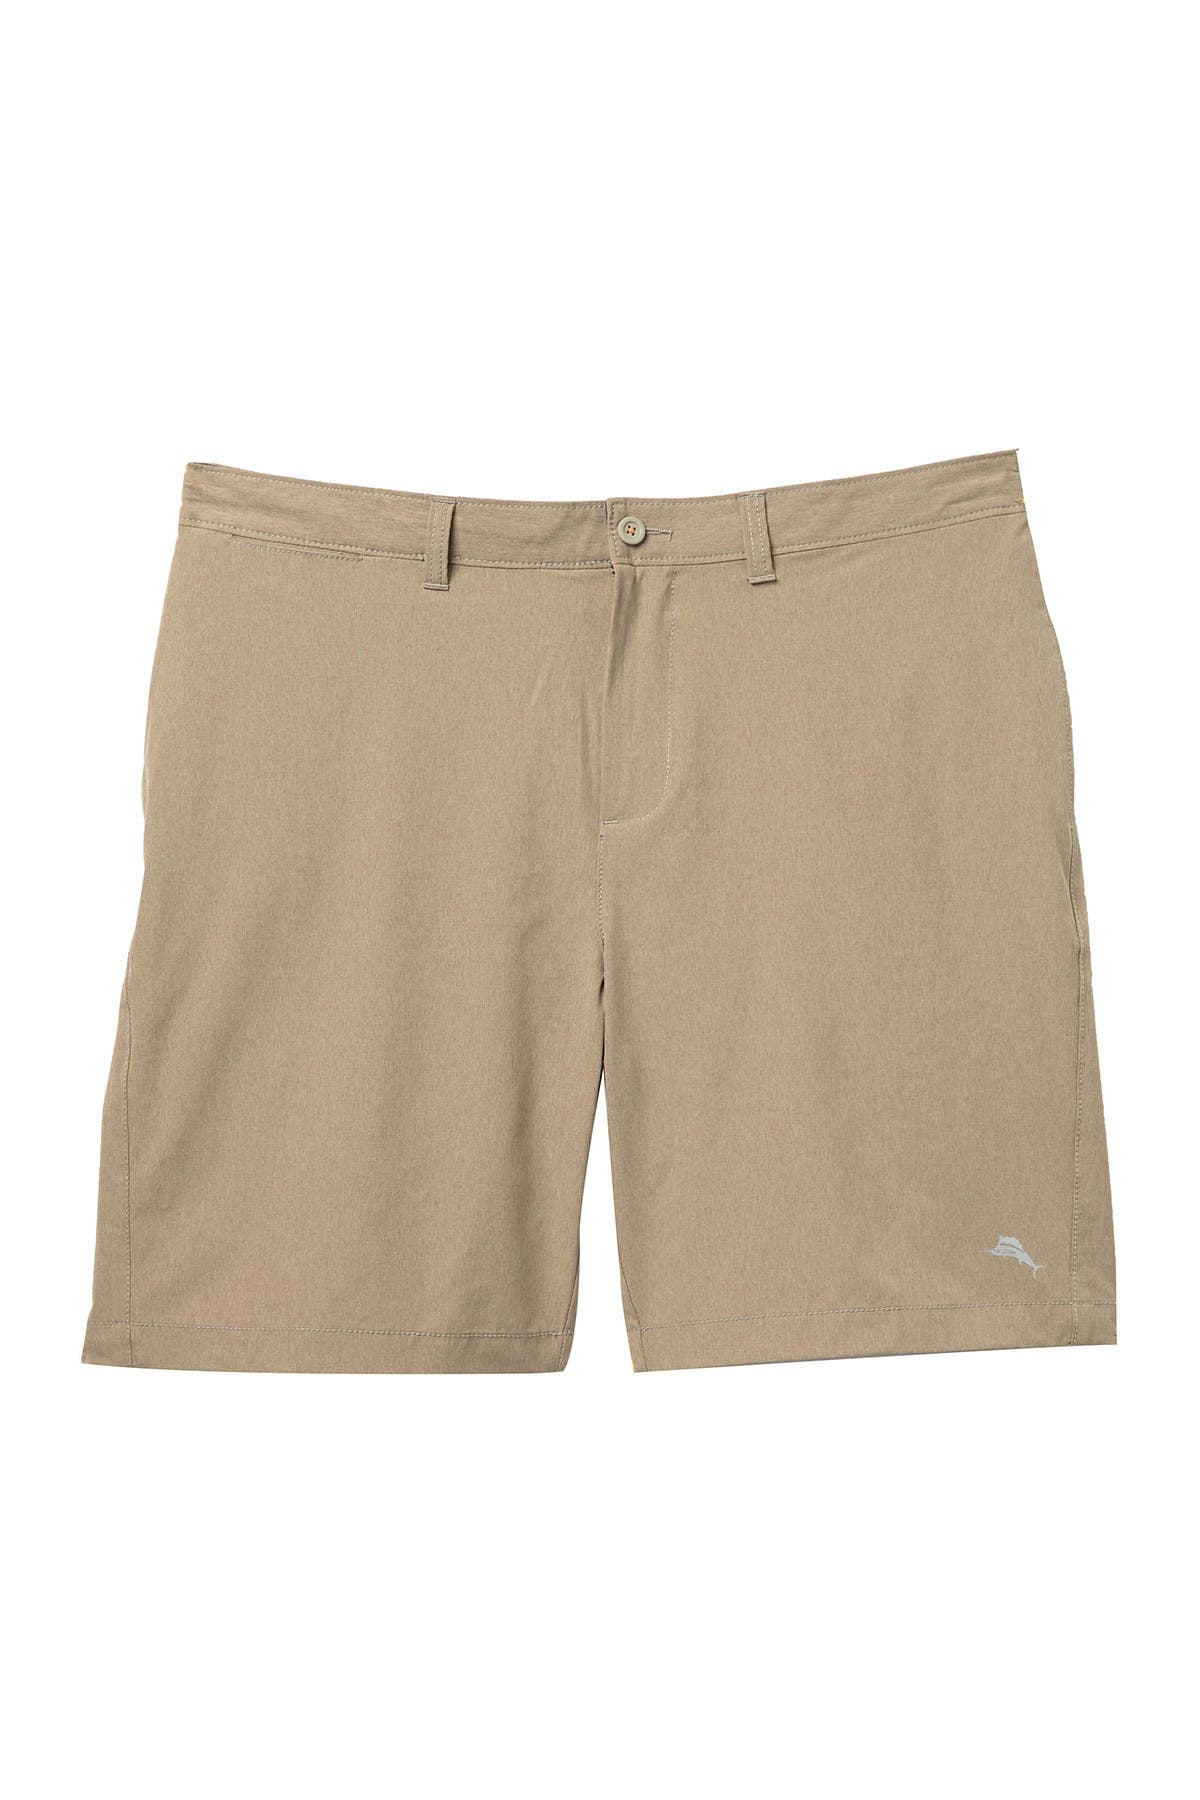 tommy bahama cayman isles shorts